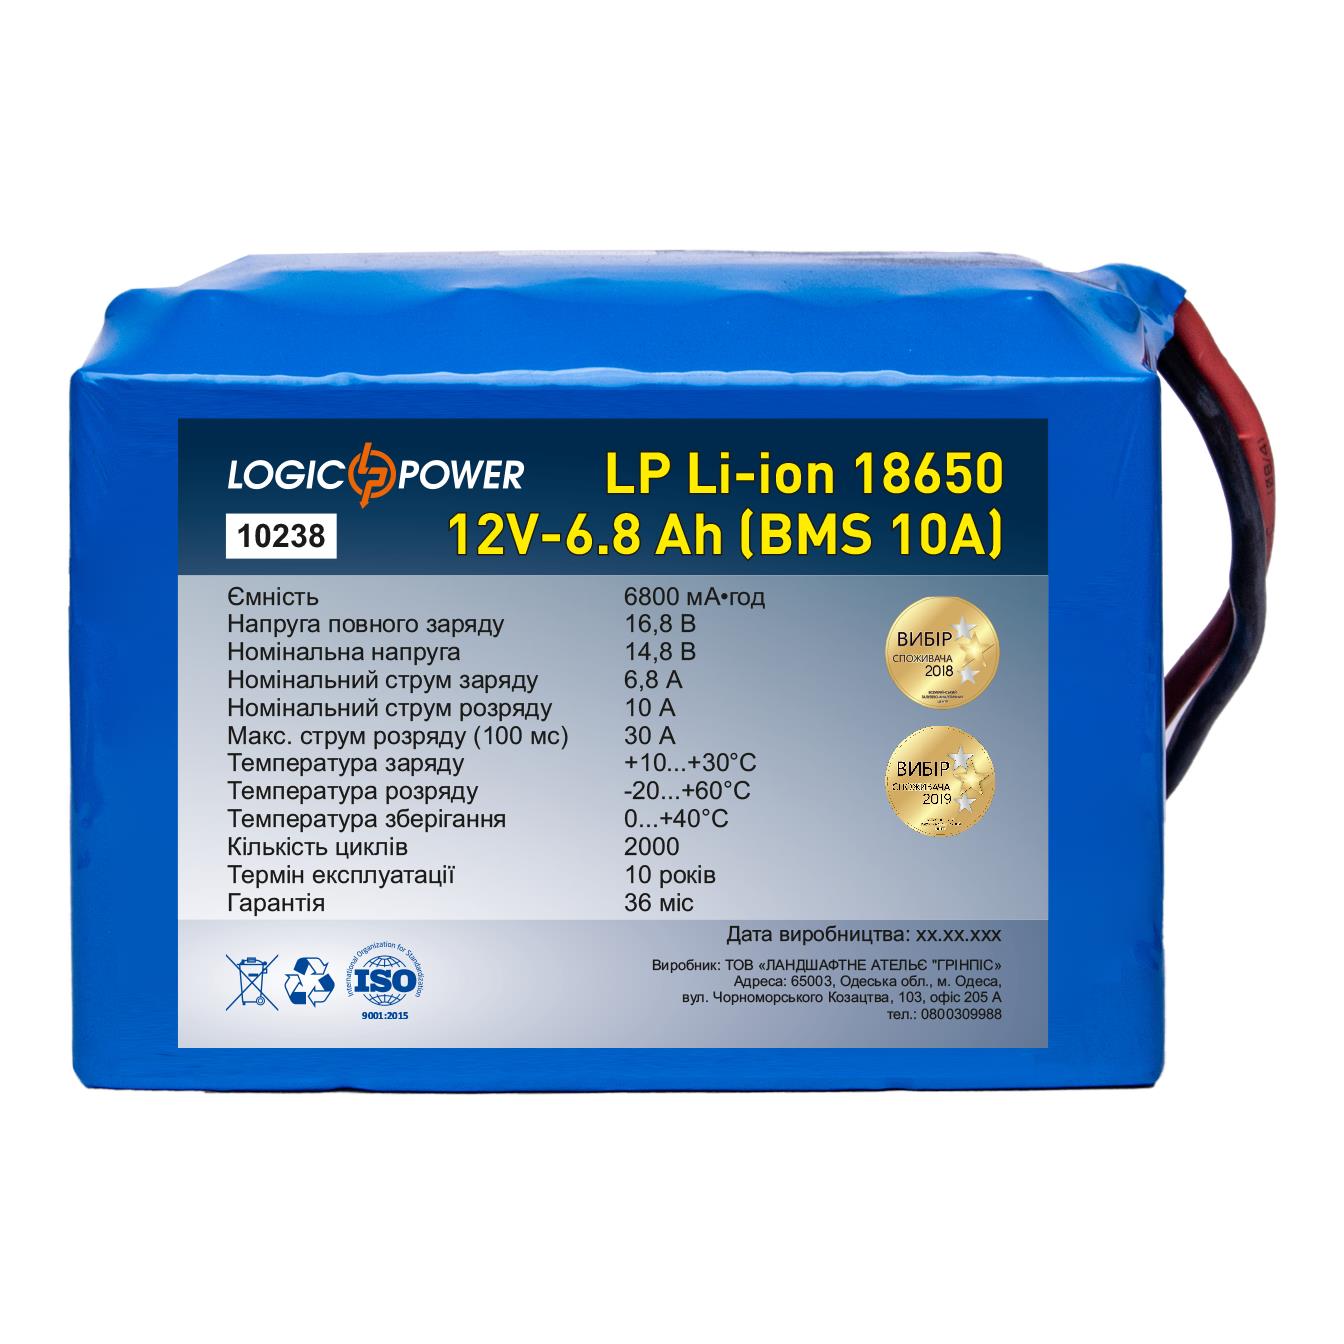 Акумулятор літій-іонний LogicPower LP Li-ion 18650 12V - 6.8 Ah (BMS 10A) (10238)